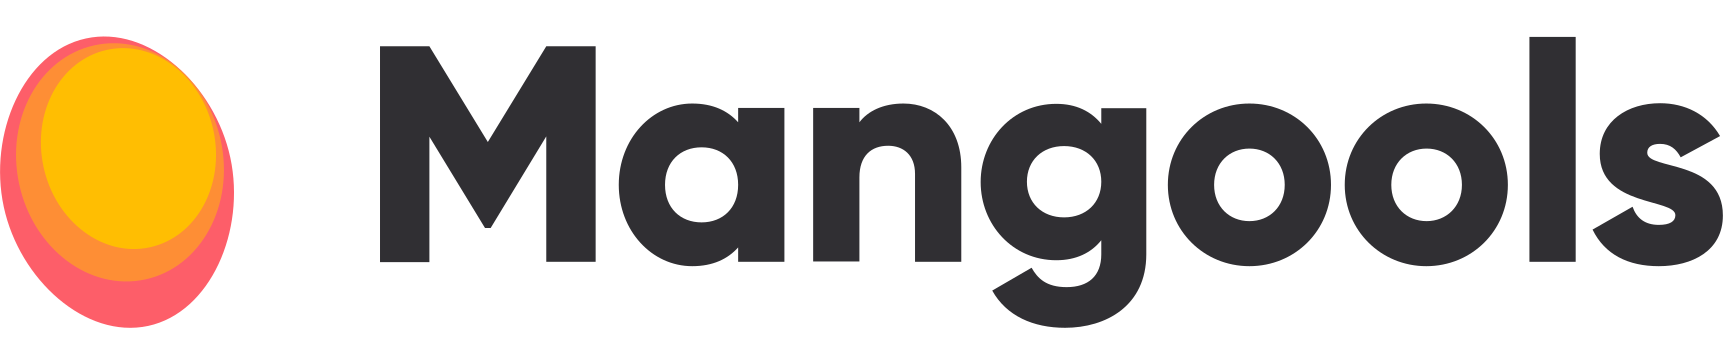 Mangools SEO-Tool Logo